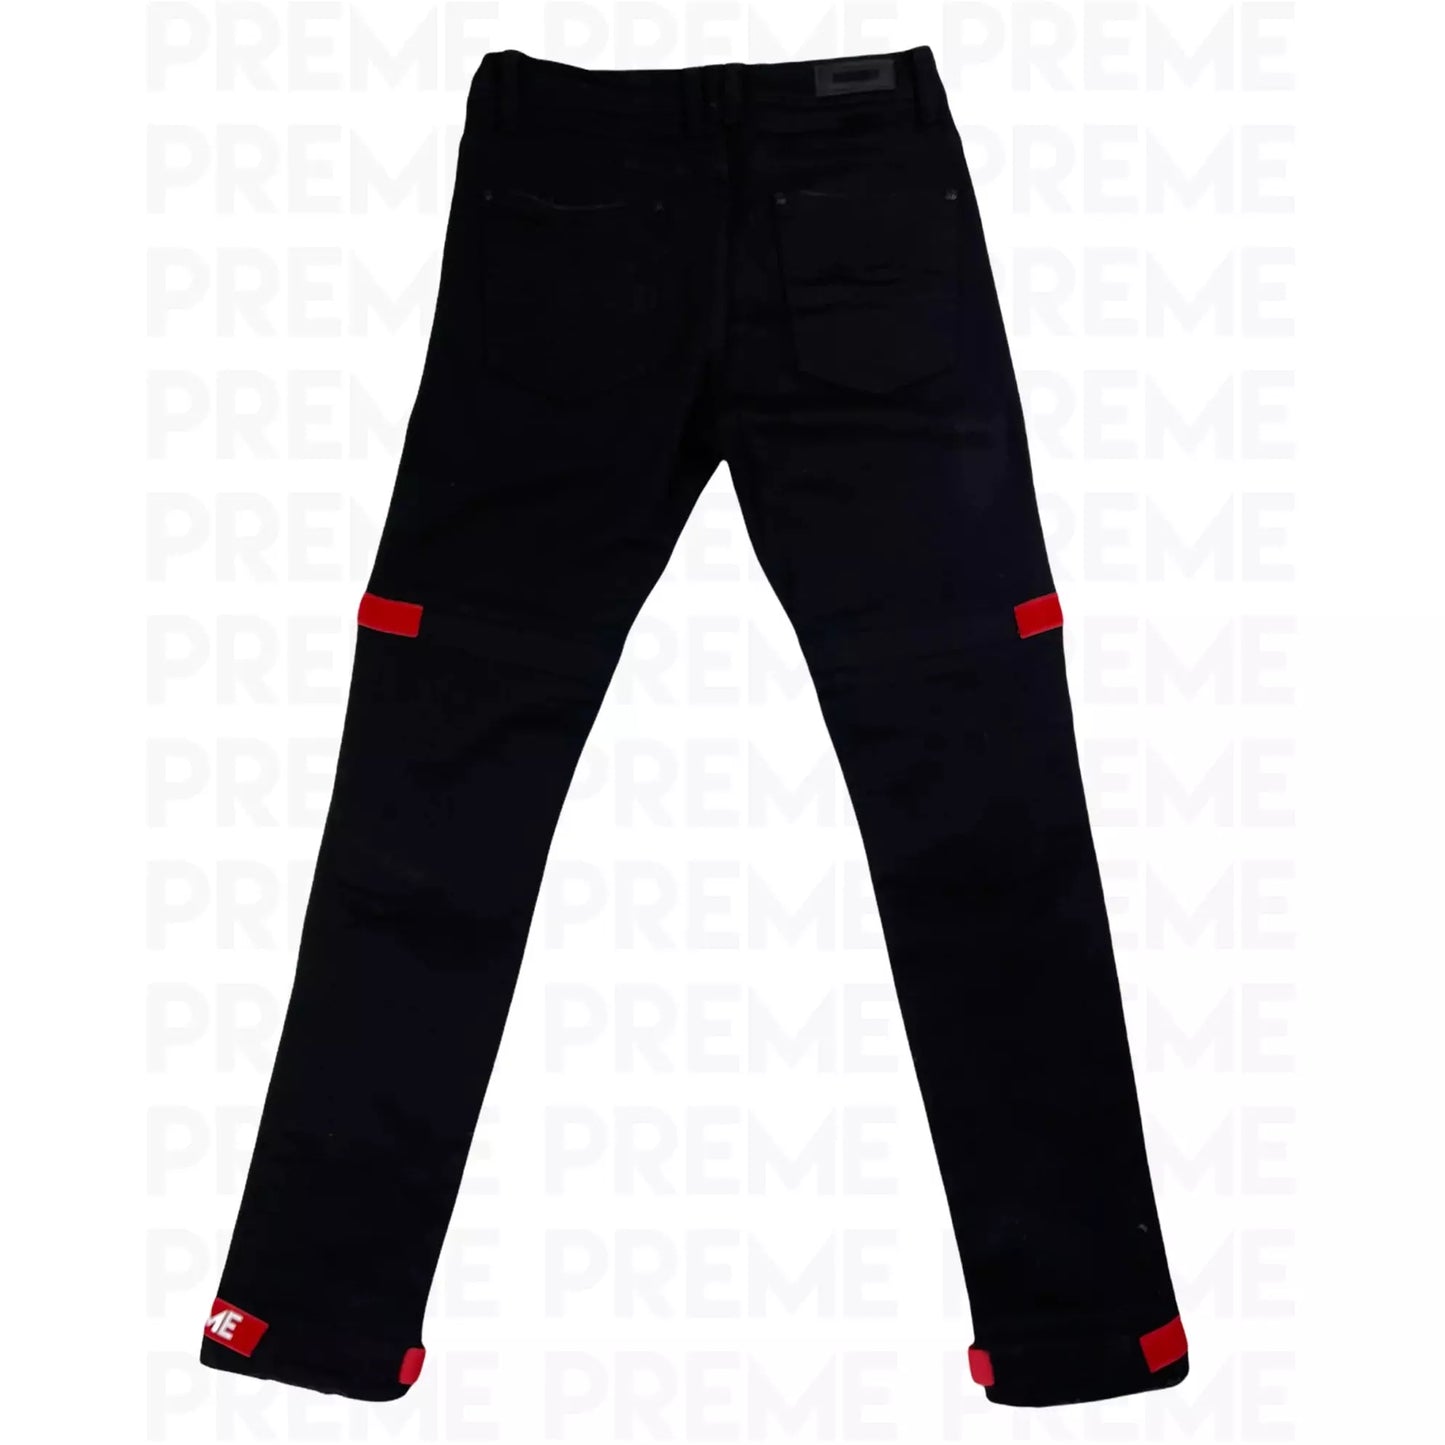 Preme Buffalo Red Strap Black Denim Jeans (PR-WB-841)